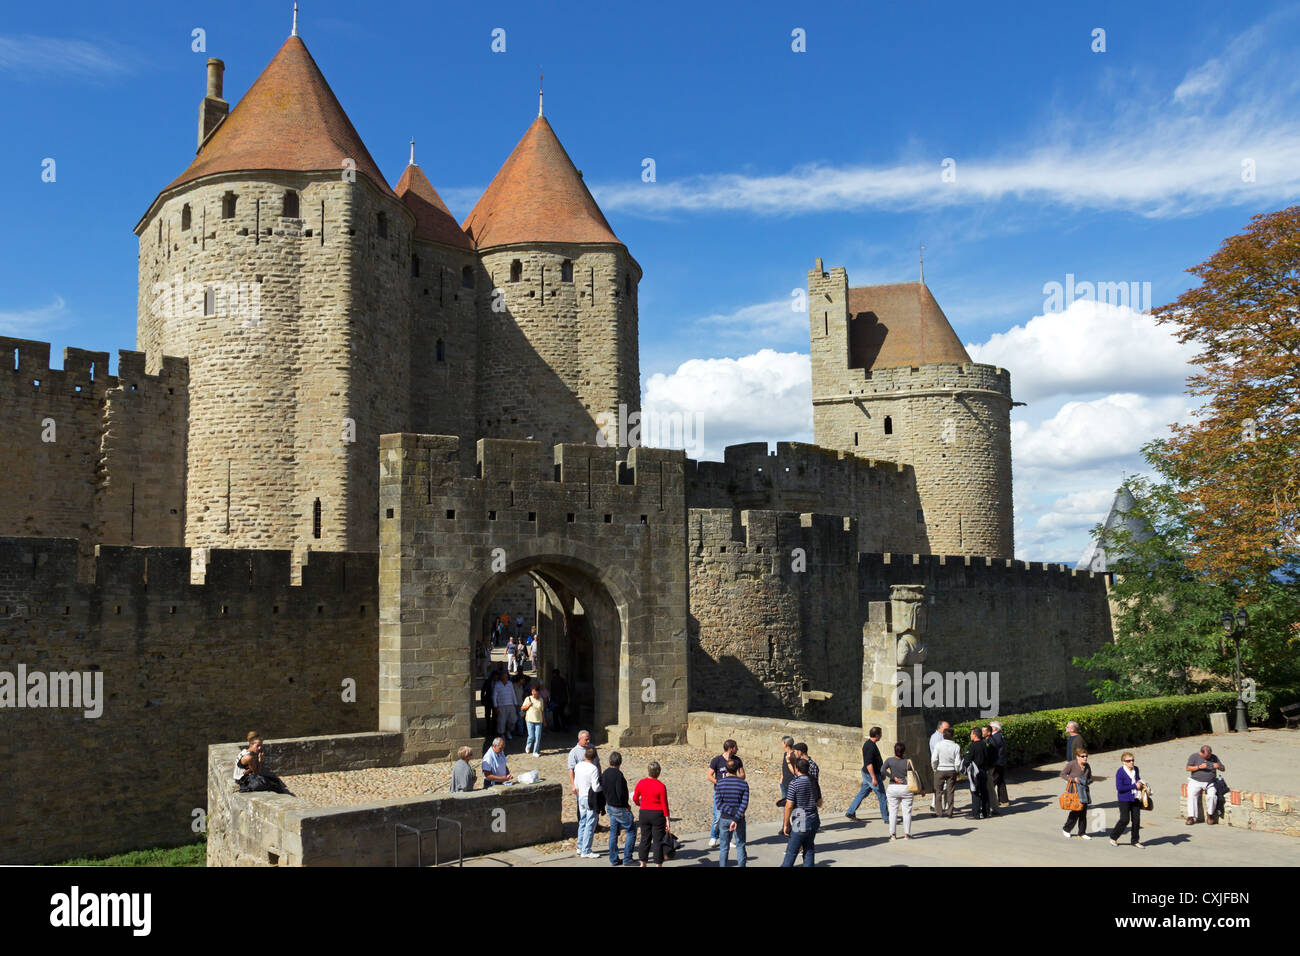 La ville médiévale de Carcassonne, La Cité, Porte narbonnaise, entrée Aud, Roussillon, Languedoc, France Banque D'Images